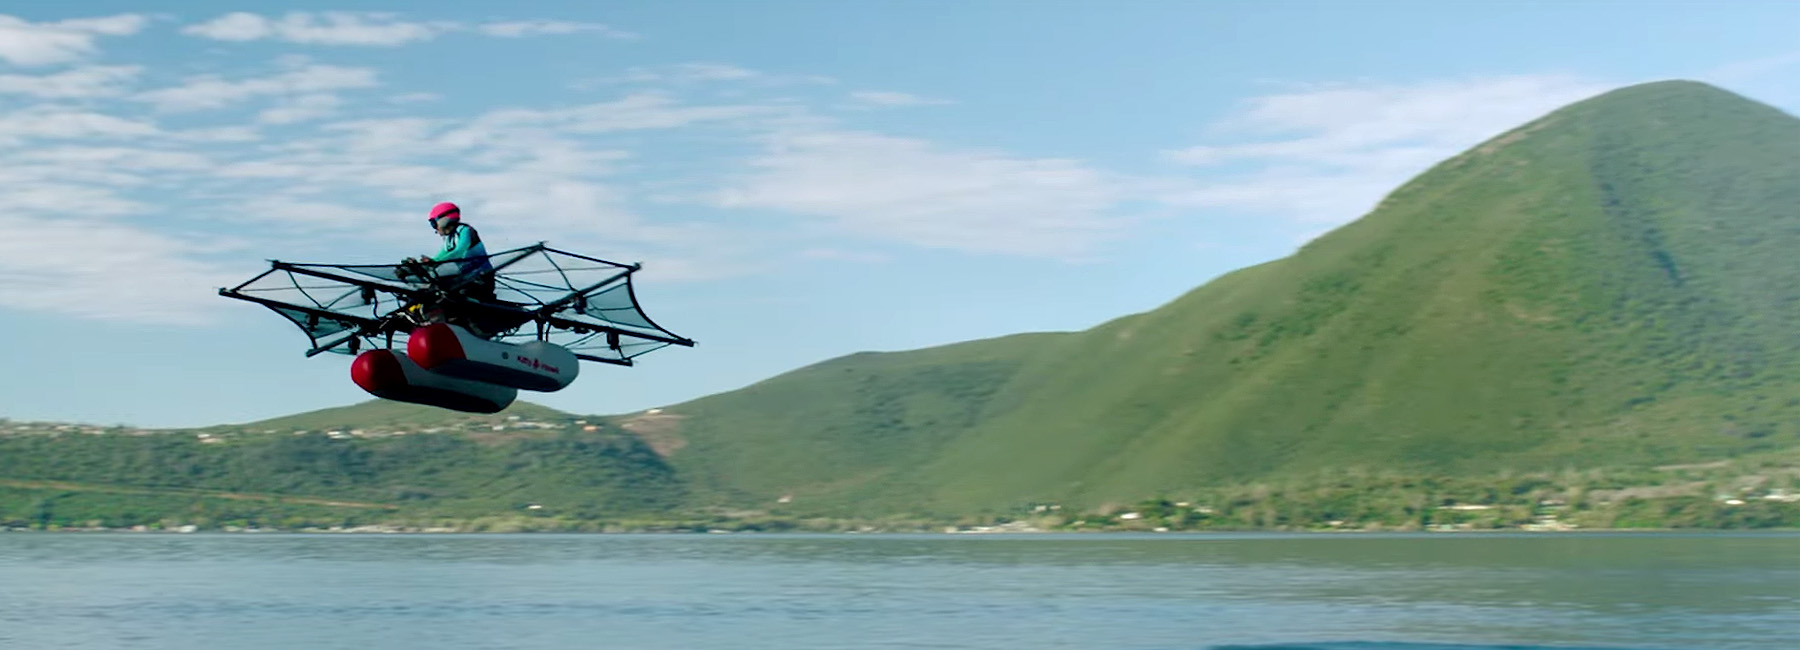 El último modelo de coche volador… ¡es una moto!